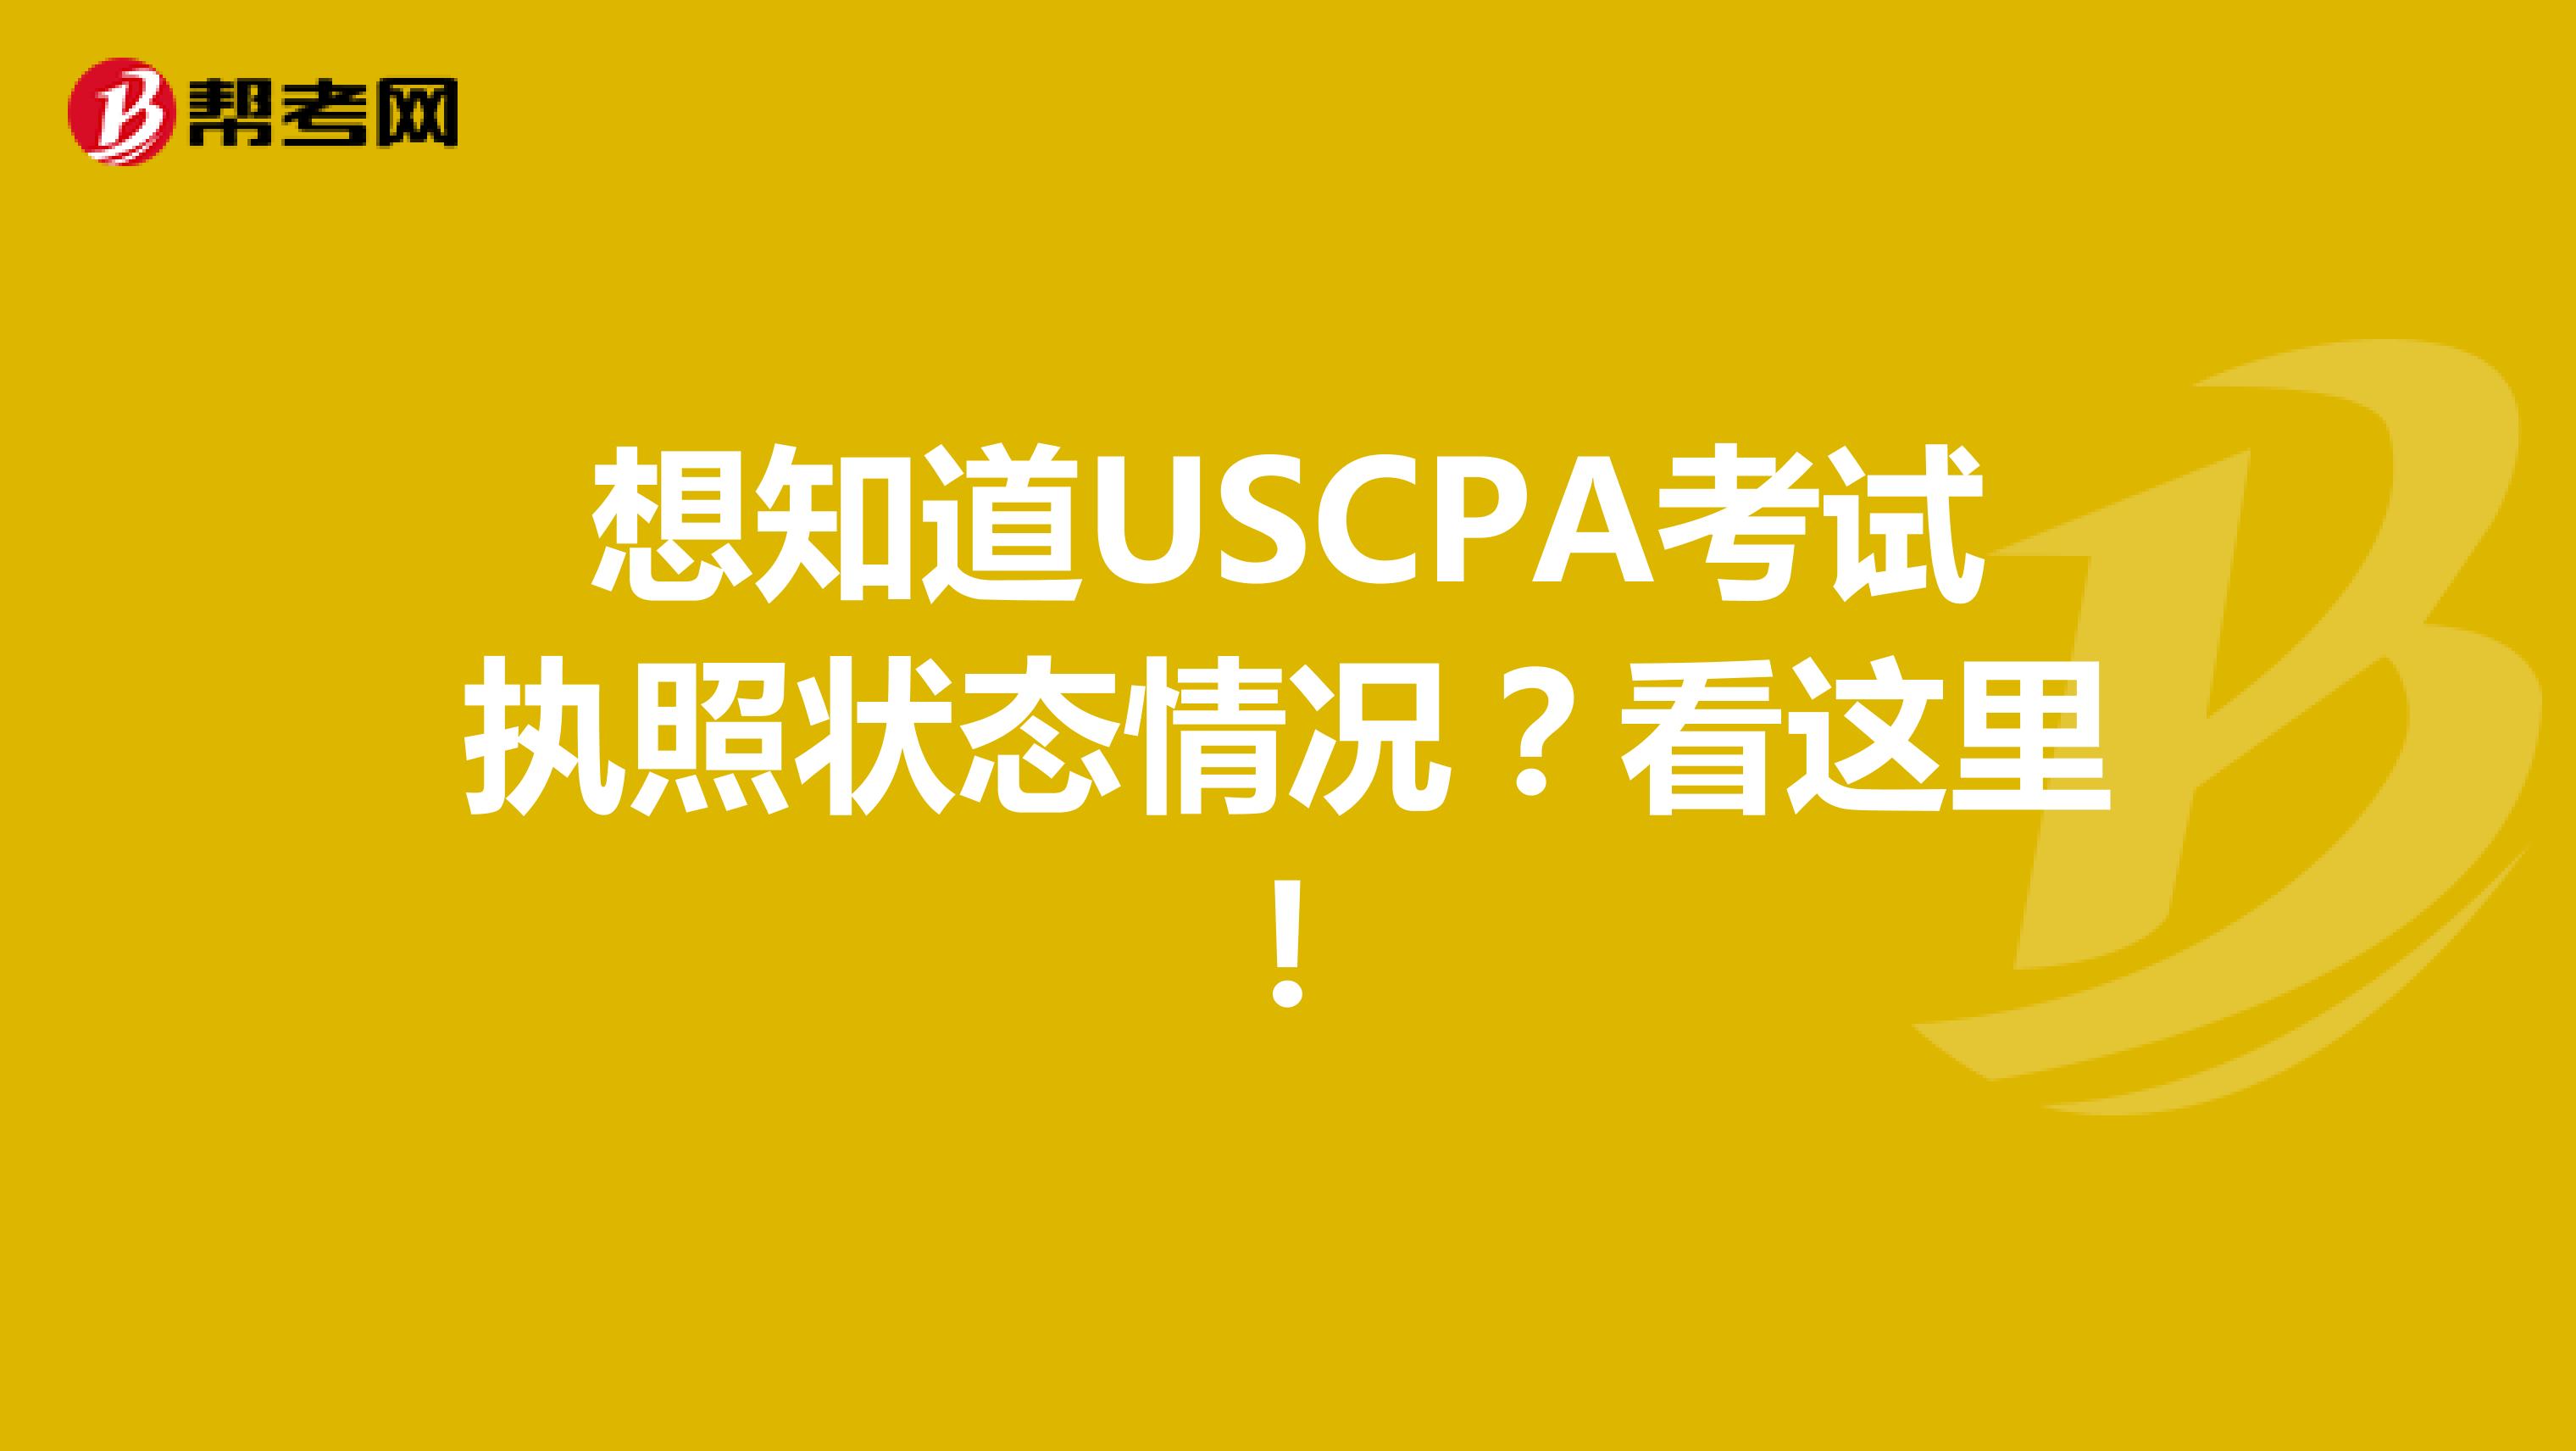 想知道USCPA考试执照状态情况？看这里！